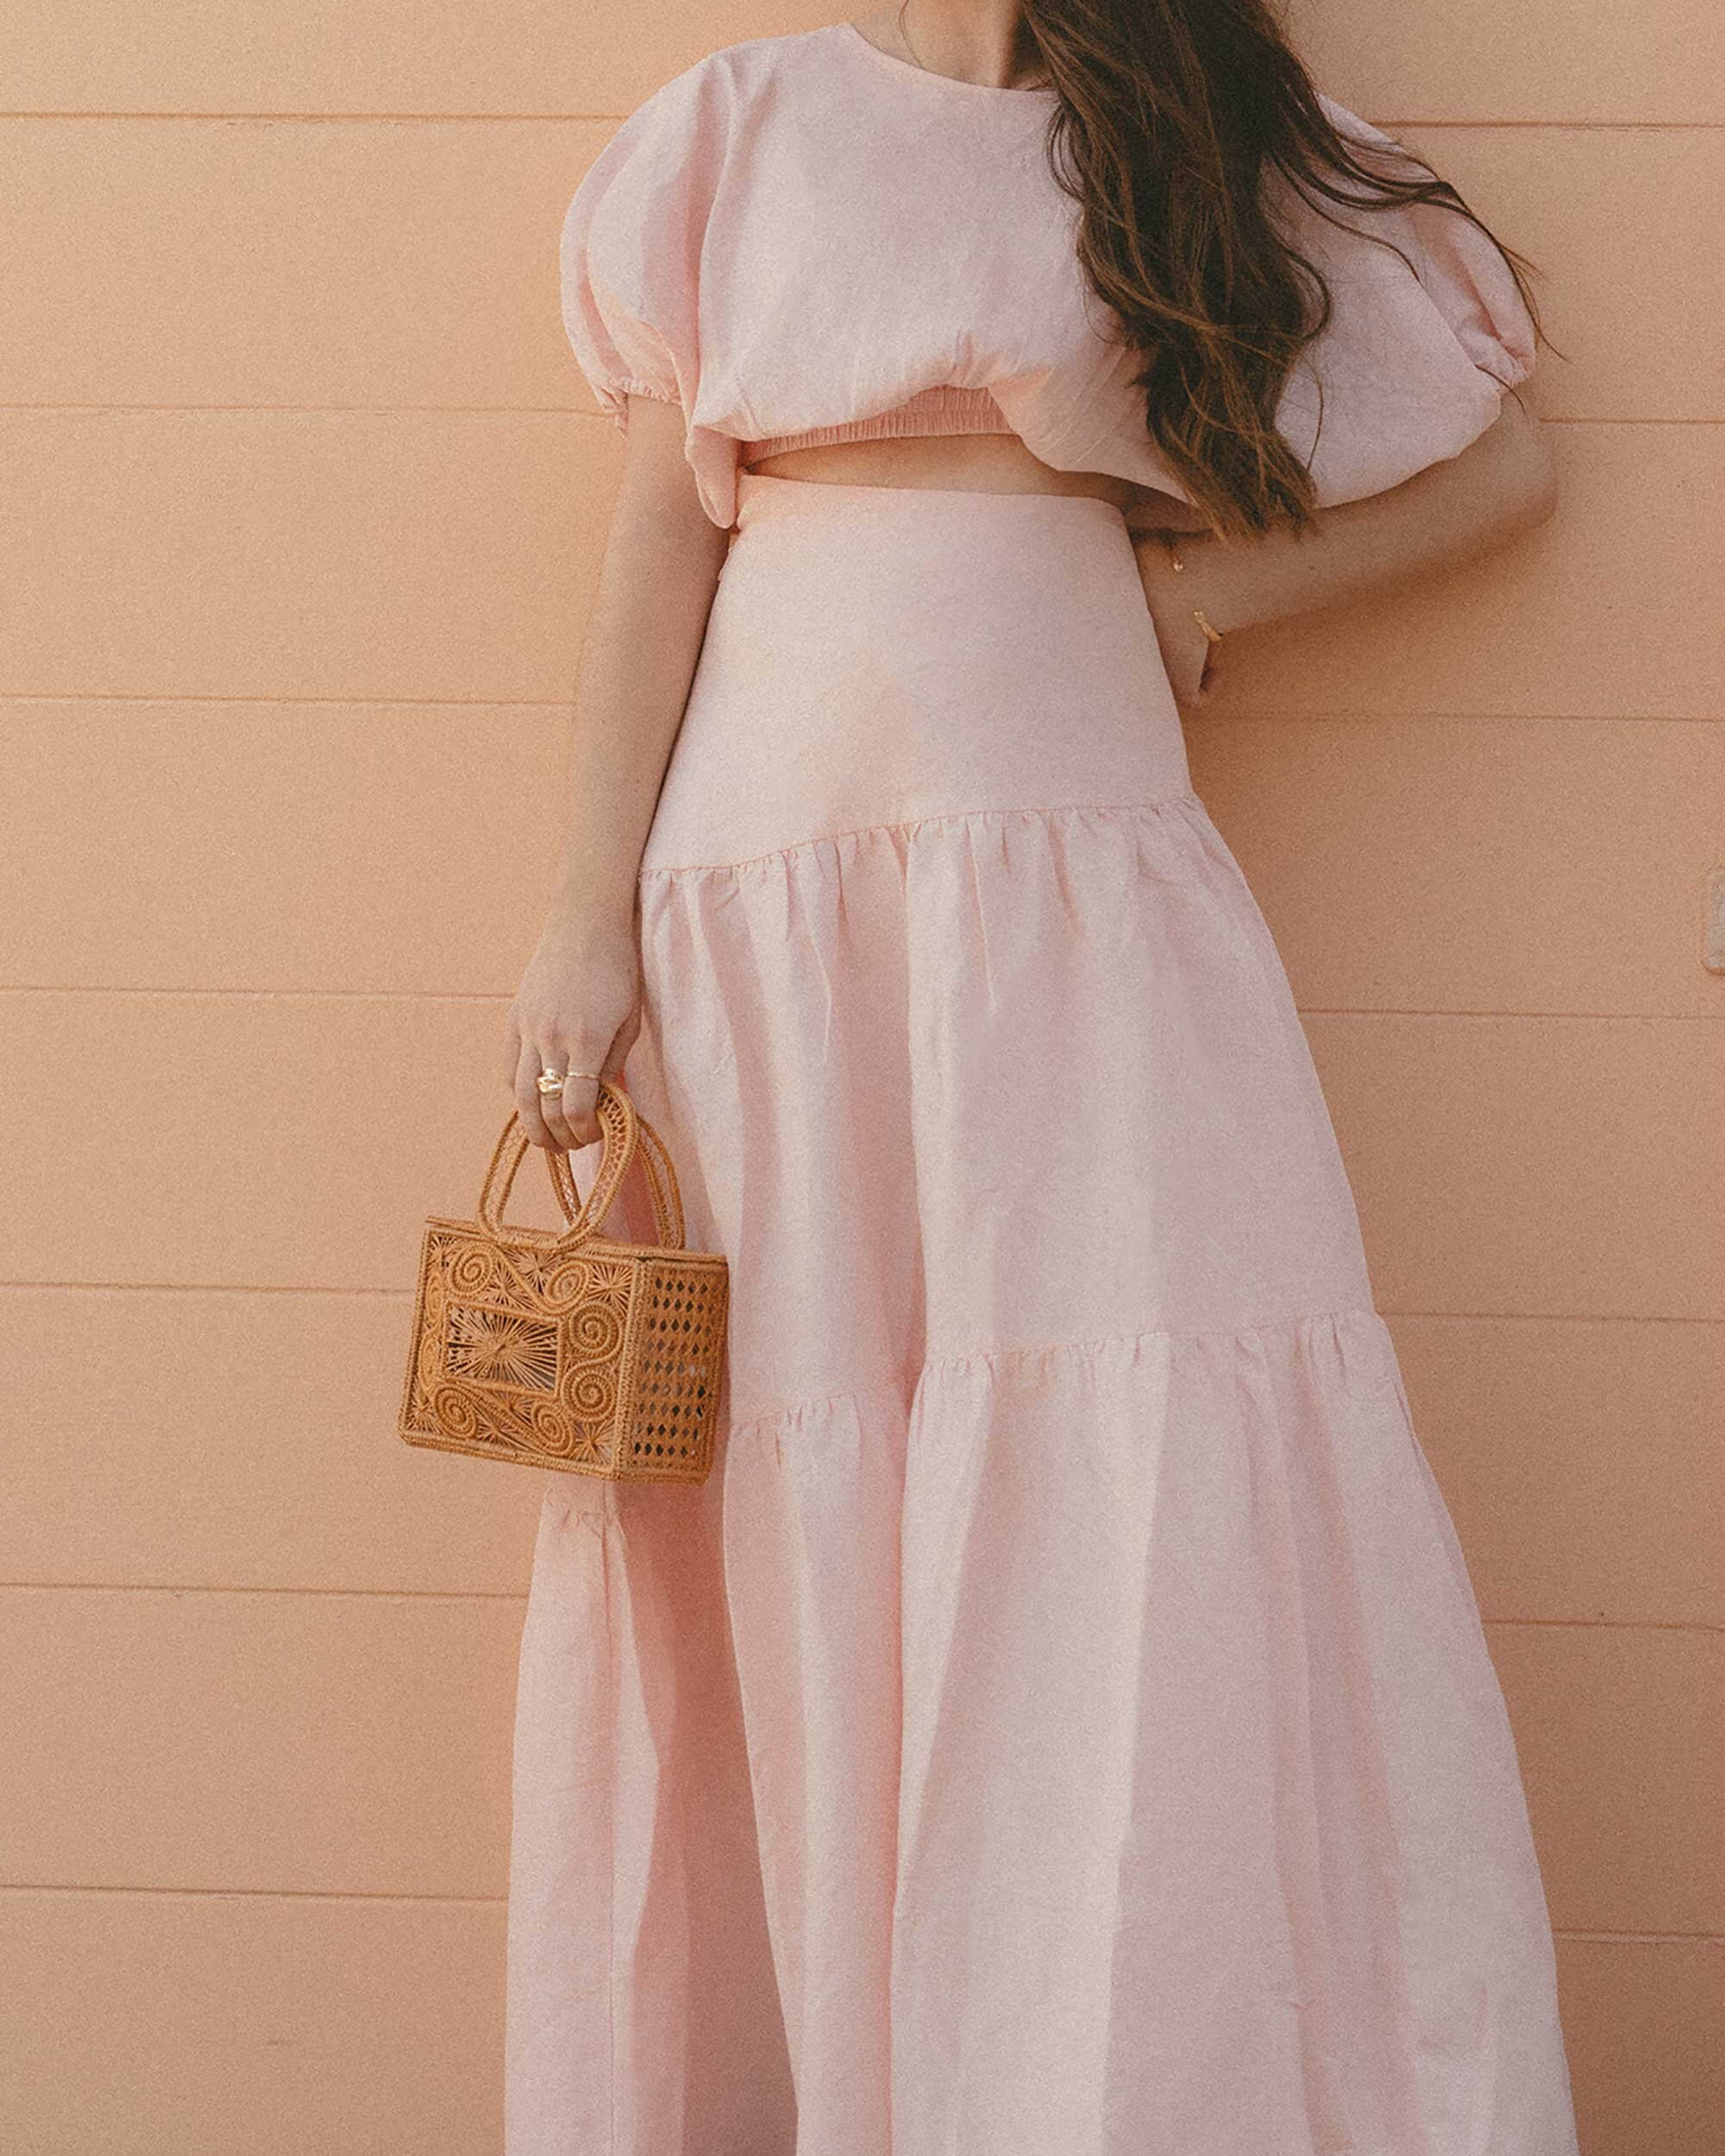 Cute Pink Spring Skirt Outfit Idea. Sarah Butler of @sarahchristine wearing  Mossman Daybreak Pink Linen Crop Top and Pink Linen Asymmetrical Tiered Skirt in Newport Beach, California - 2.jpg